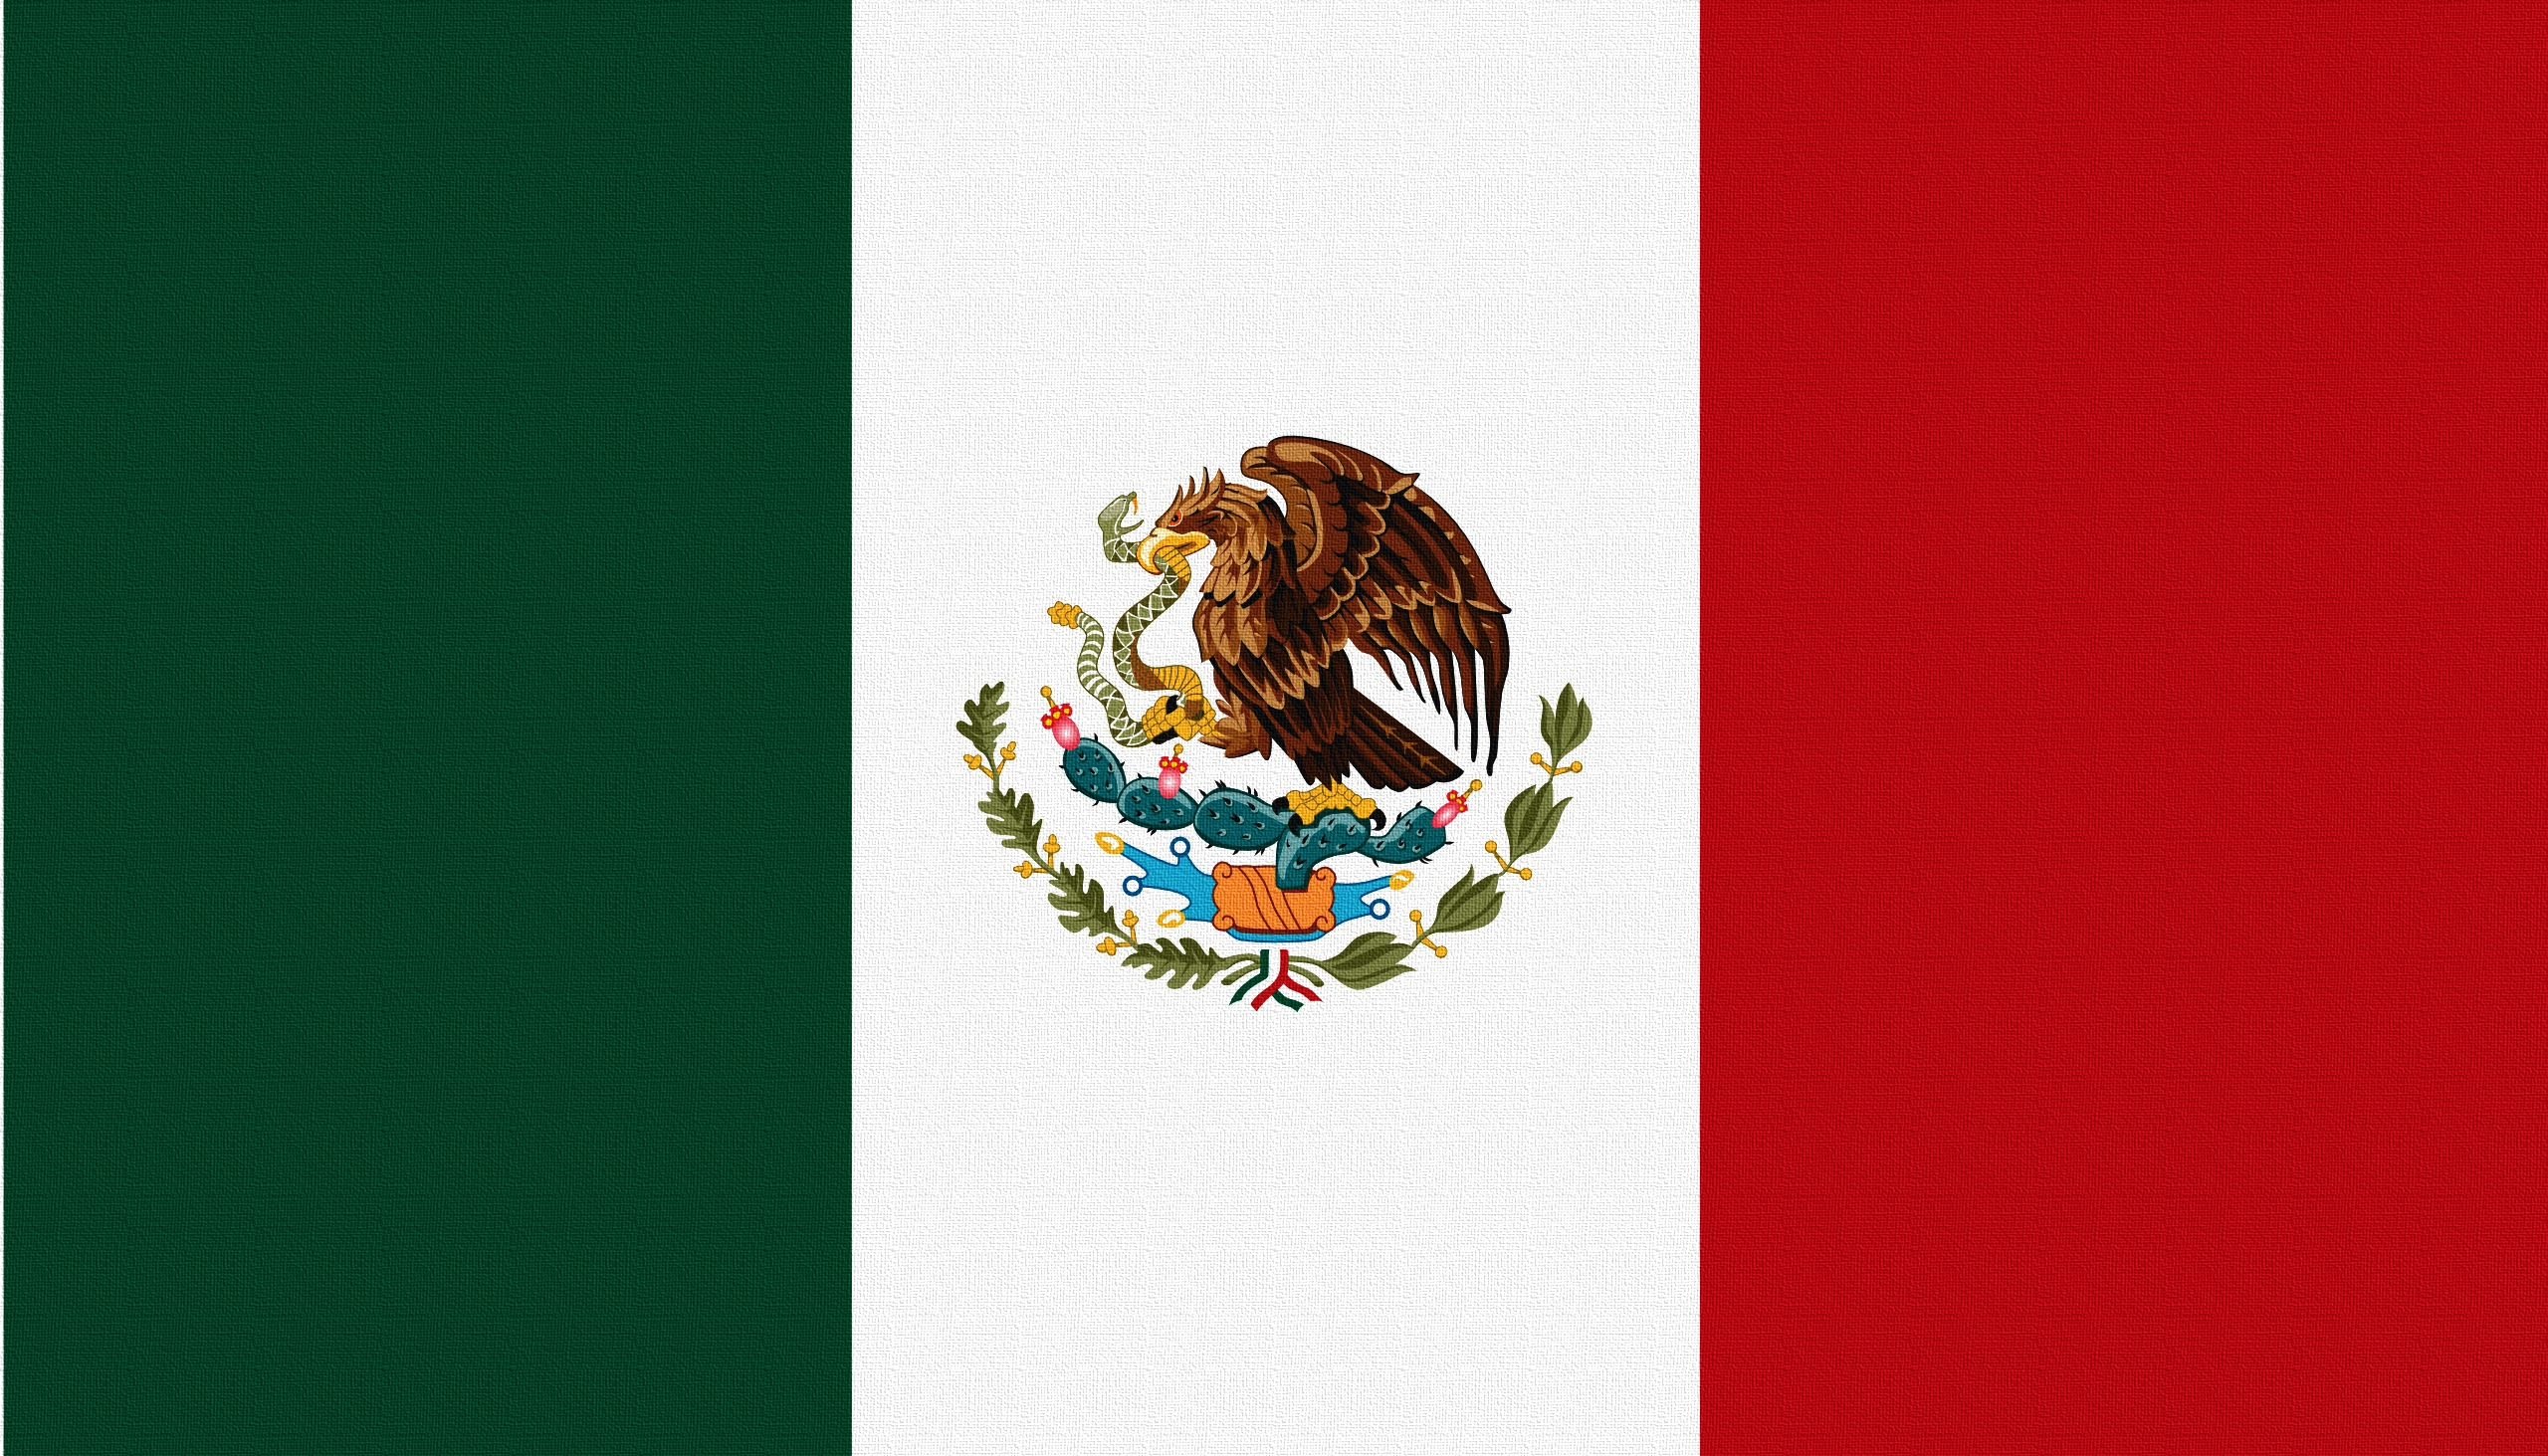 Скачать обои бесплатно Разное, Мексика, Флаг, Орел, Змея картинка на рабочий стол ПК